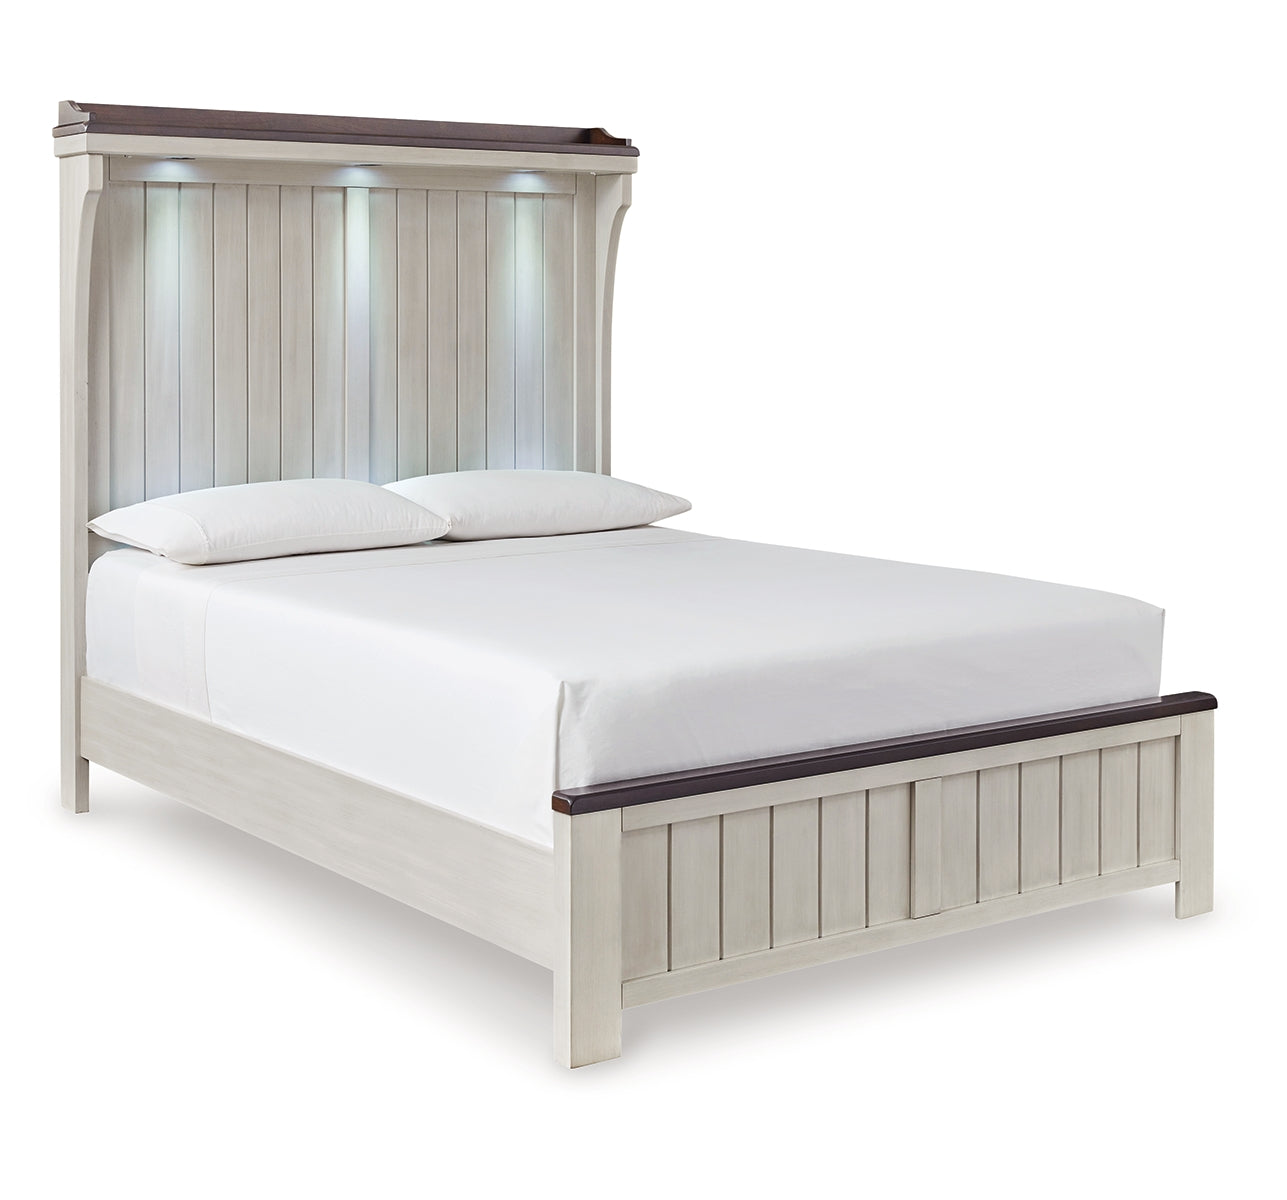 Darborn Queen Panel Bed with Dresser